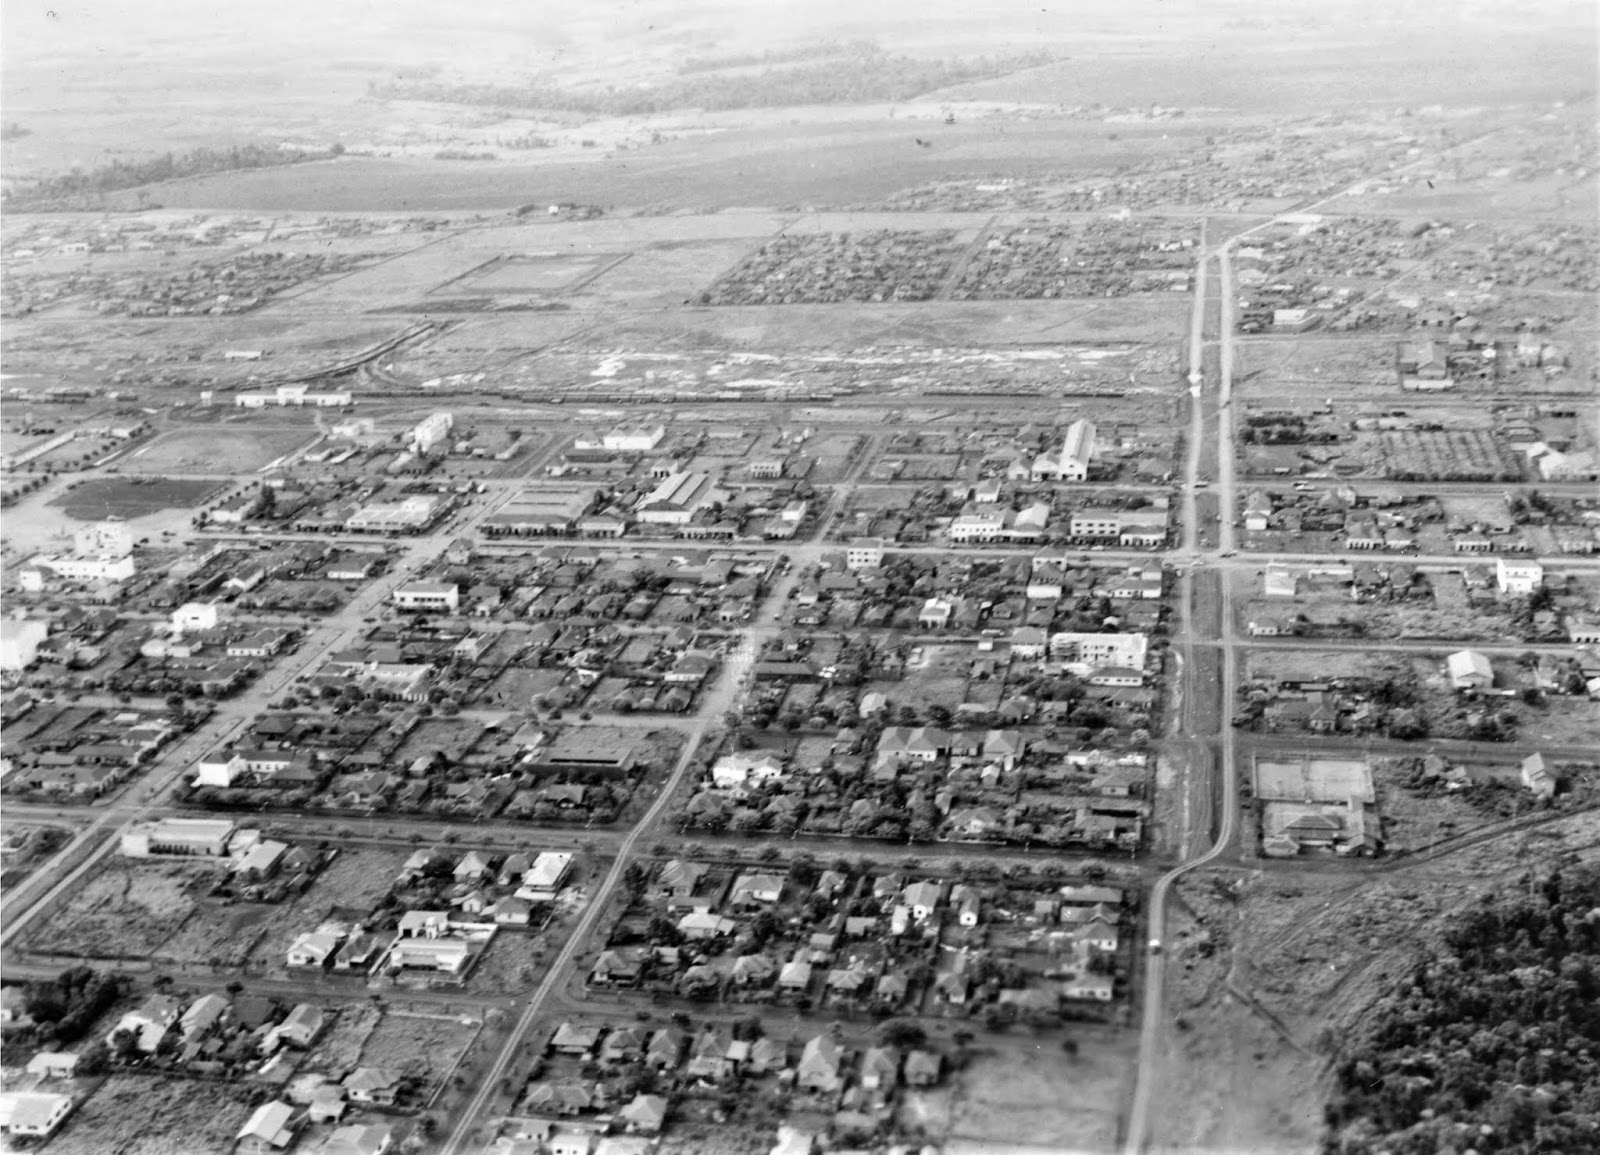 Vista aérea do Centro - Década de 1950